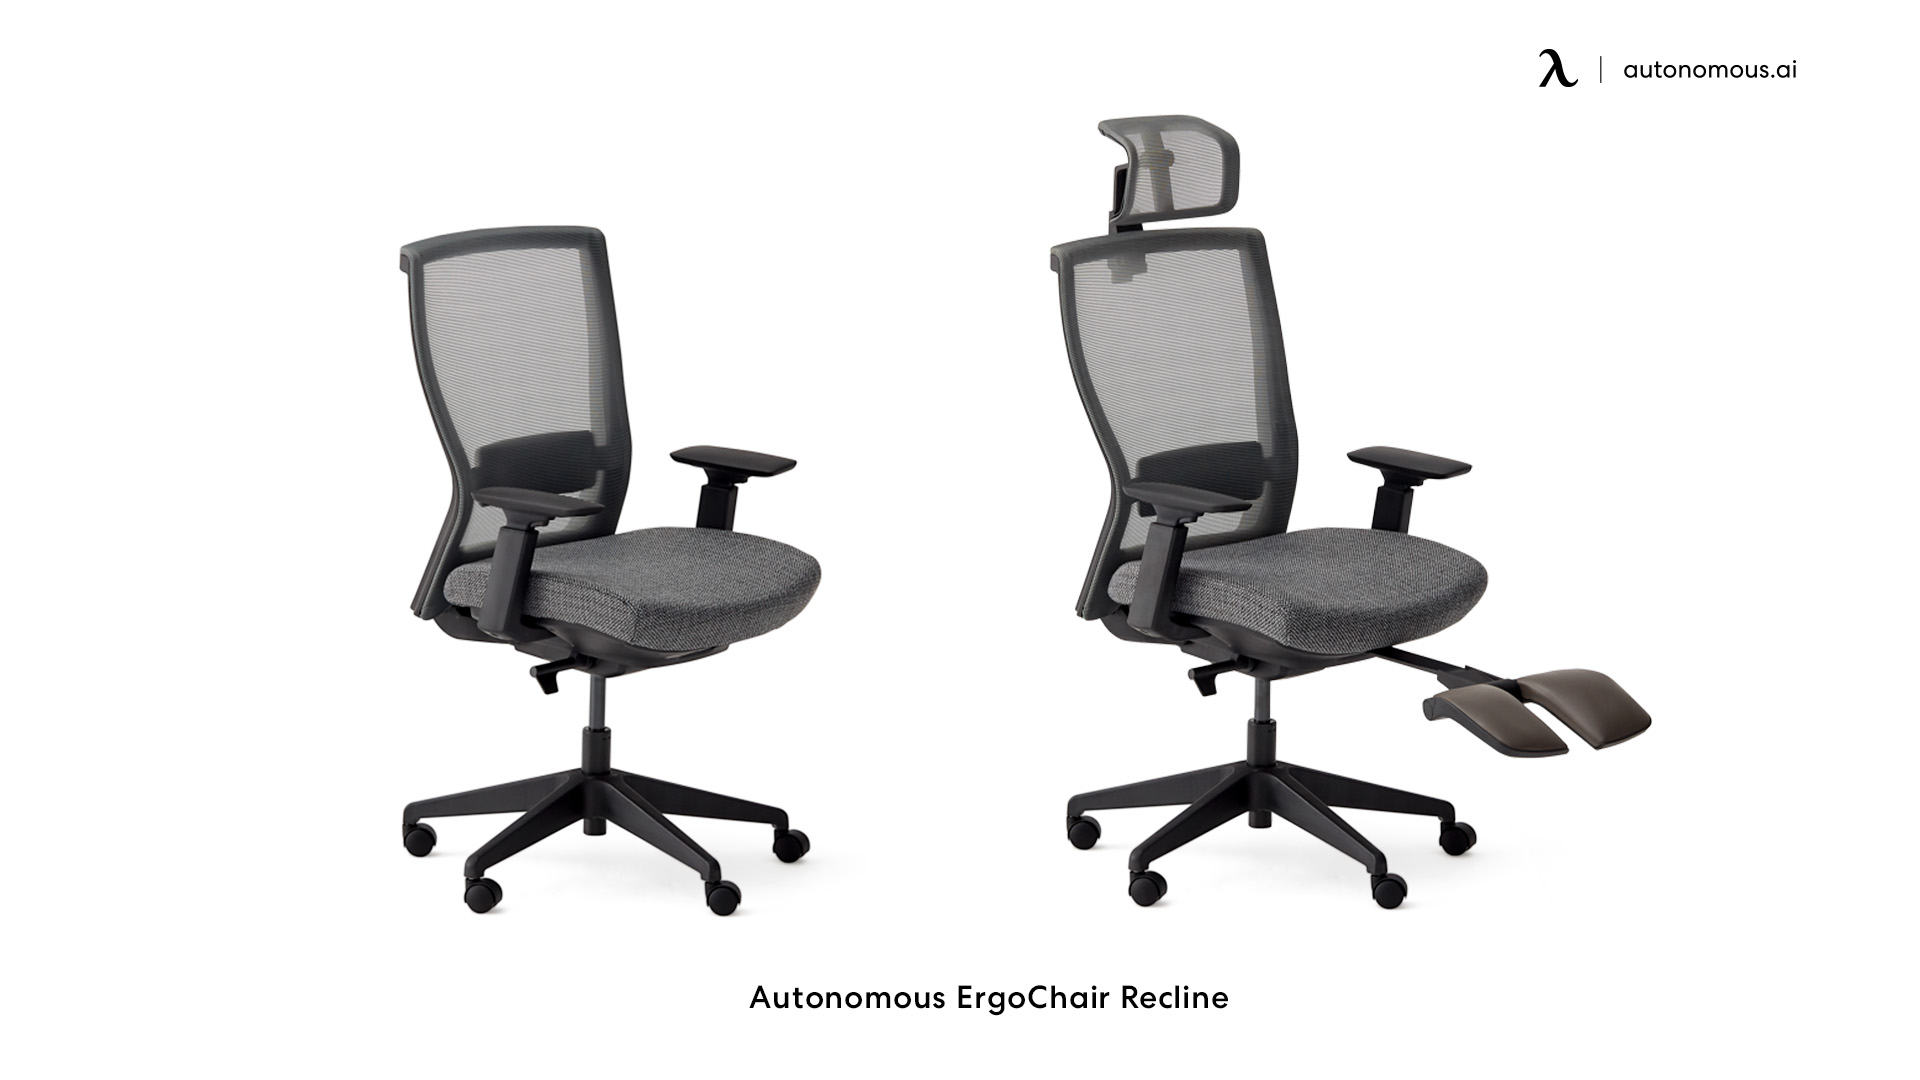 ErgoChair Recline wide seat office chair